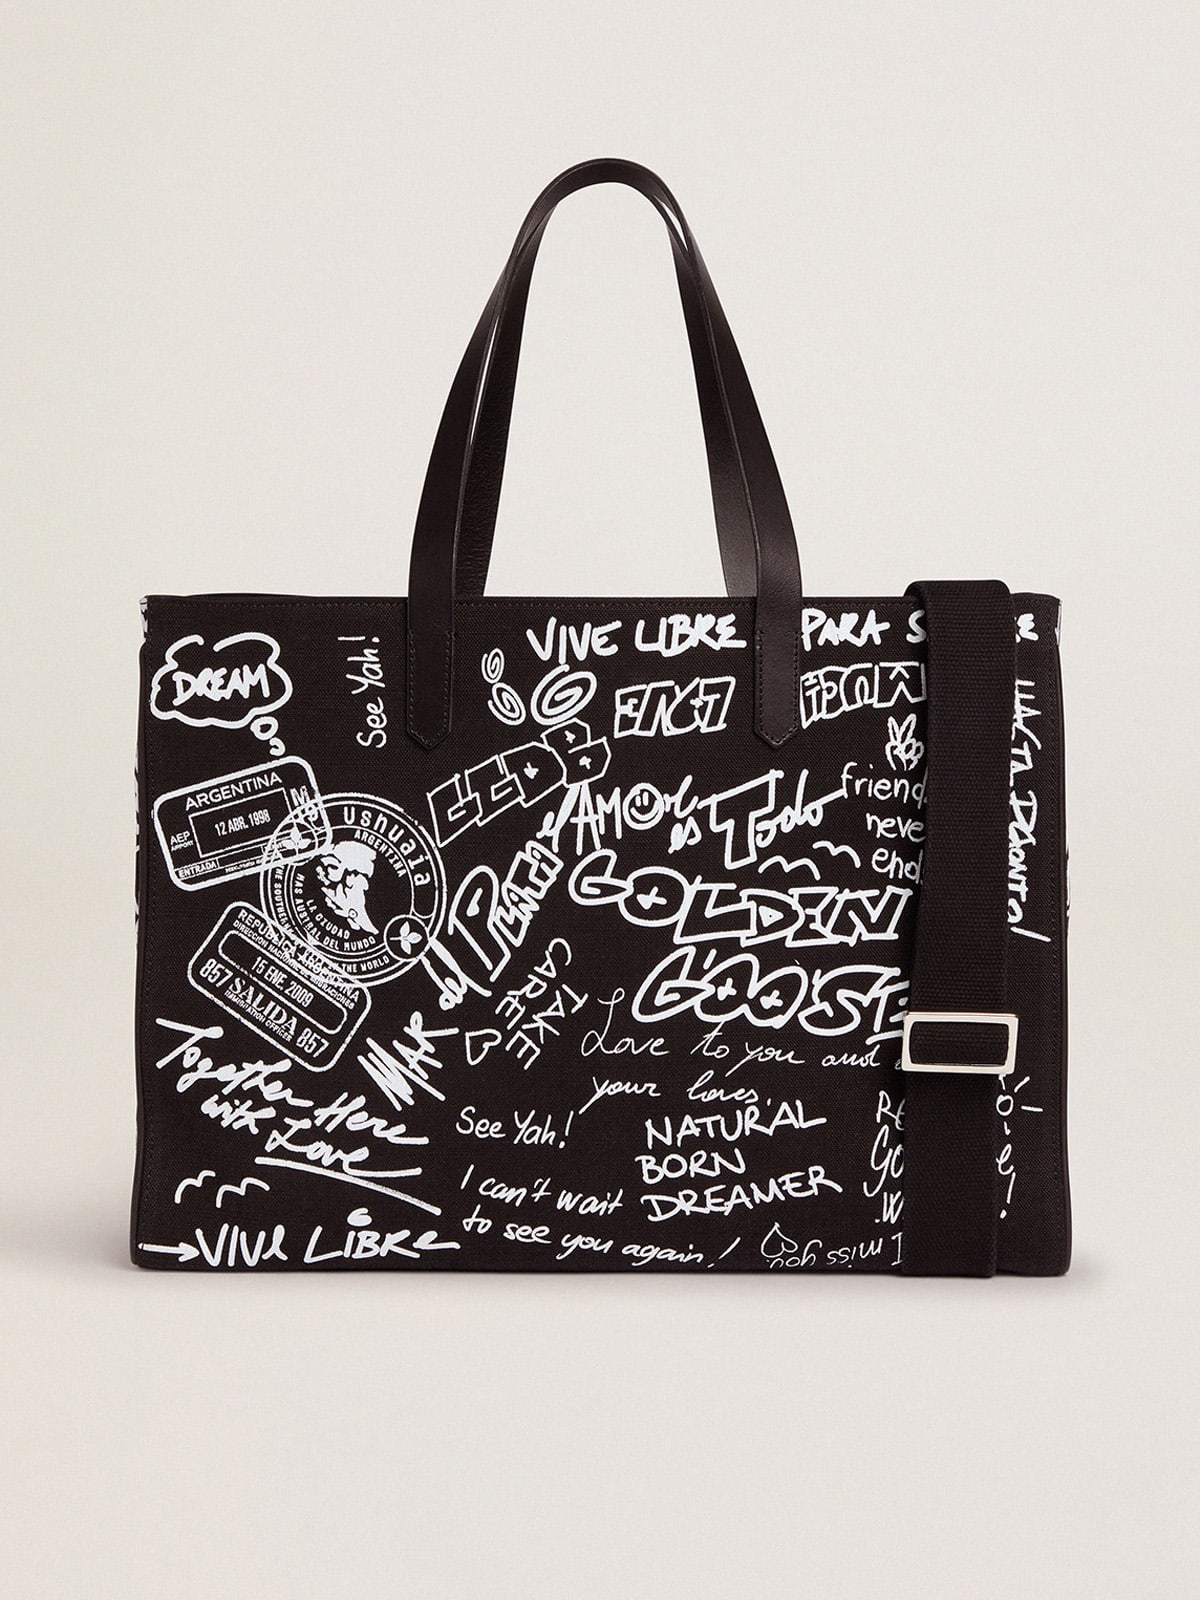 Golden Goose - Borsa California Bag East-West di colore nero con stampa graffiti bianca a contrasto in 